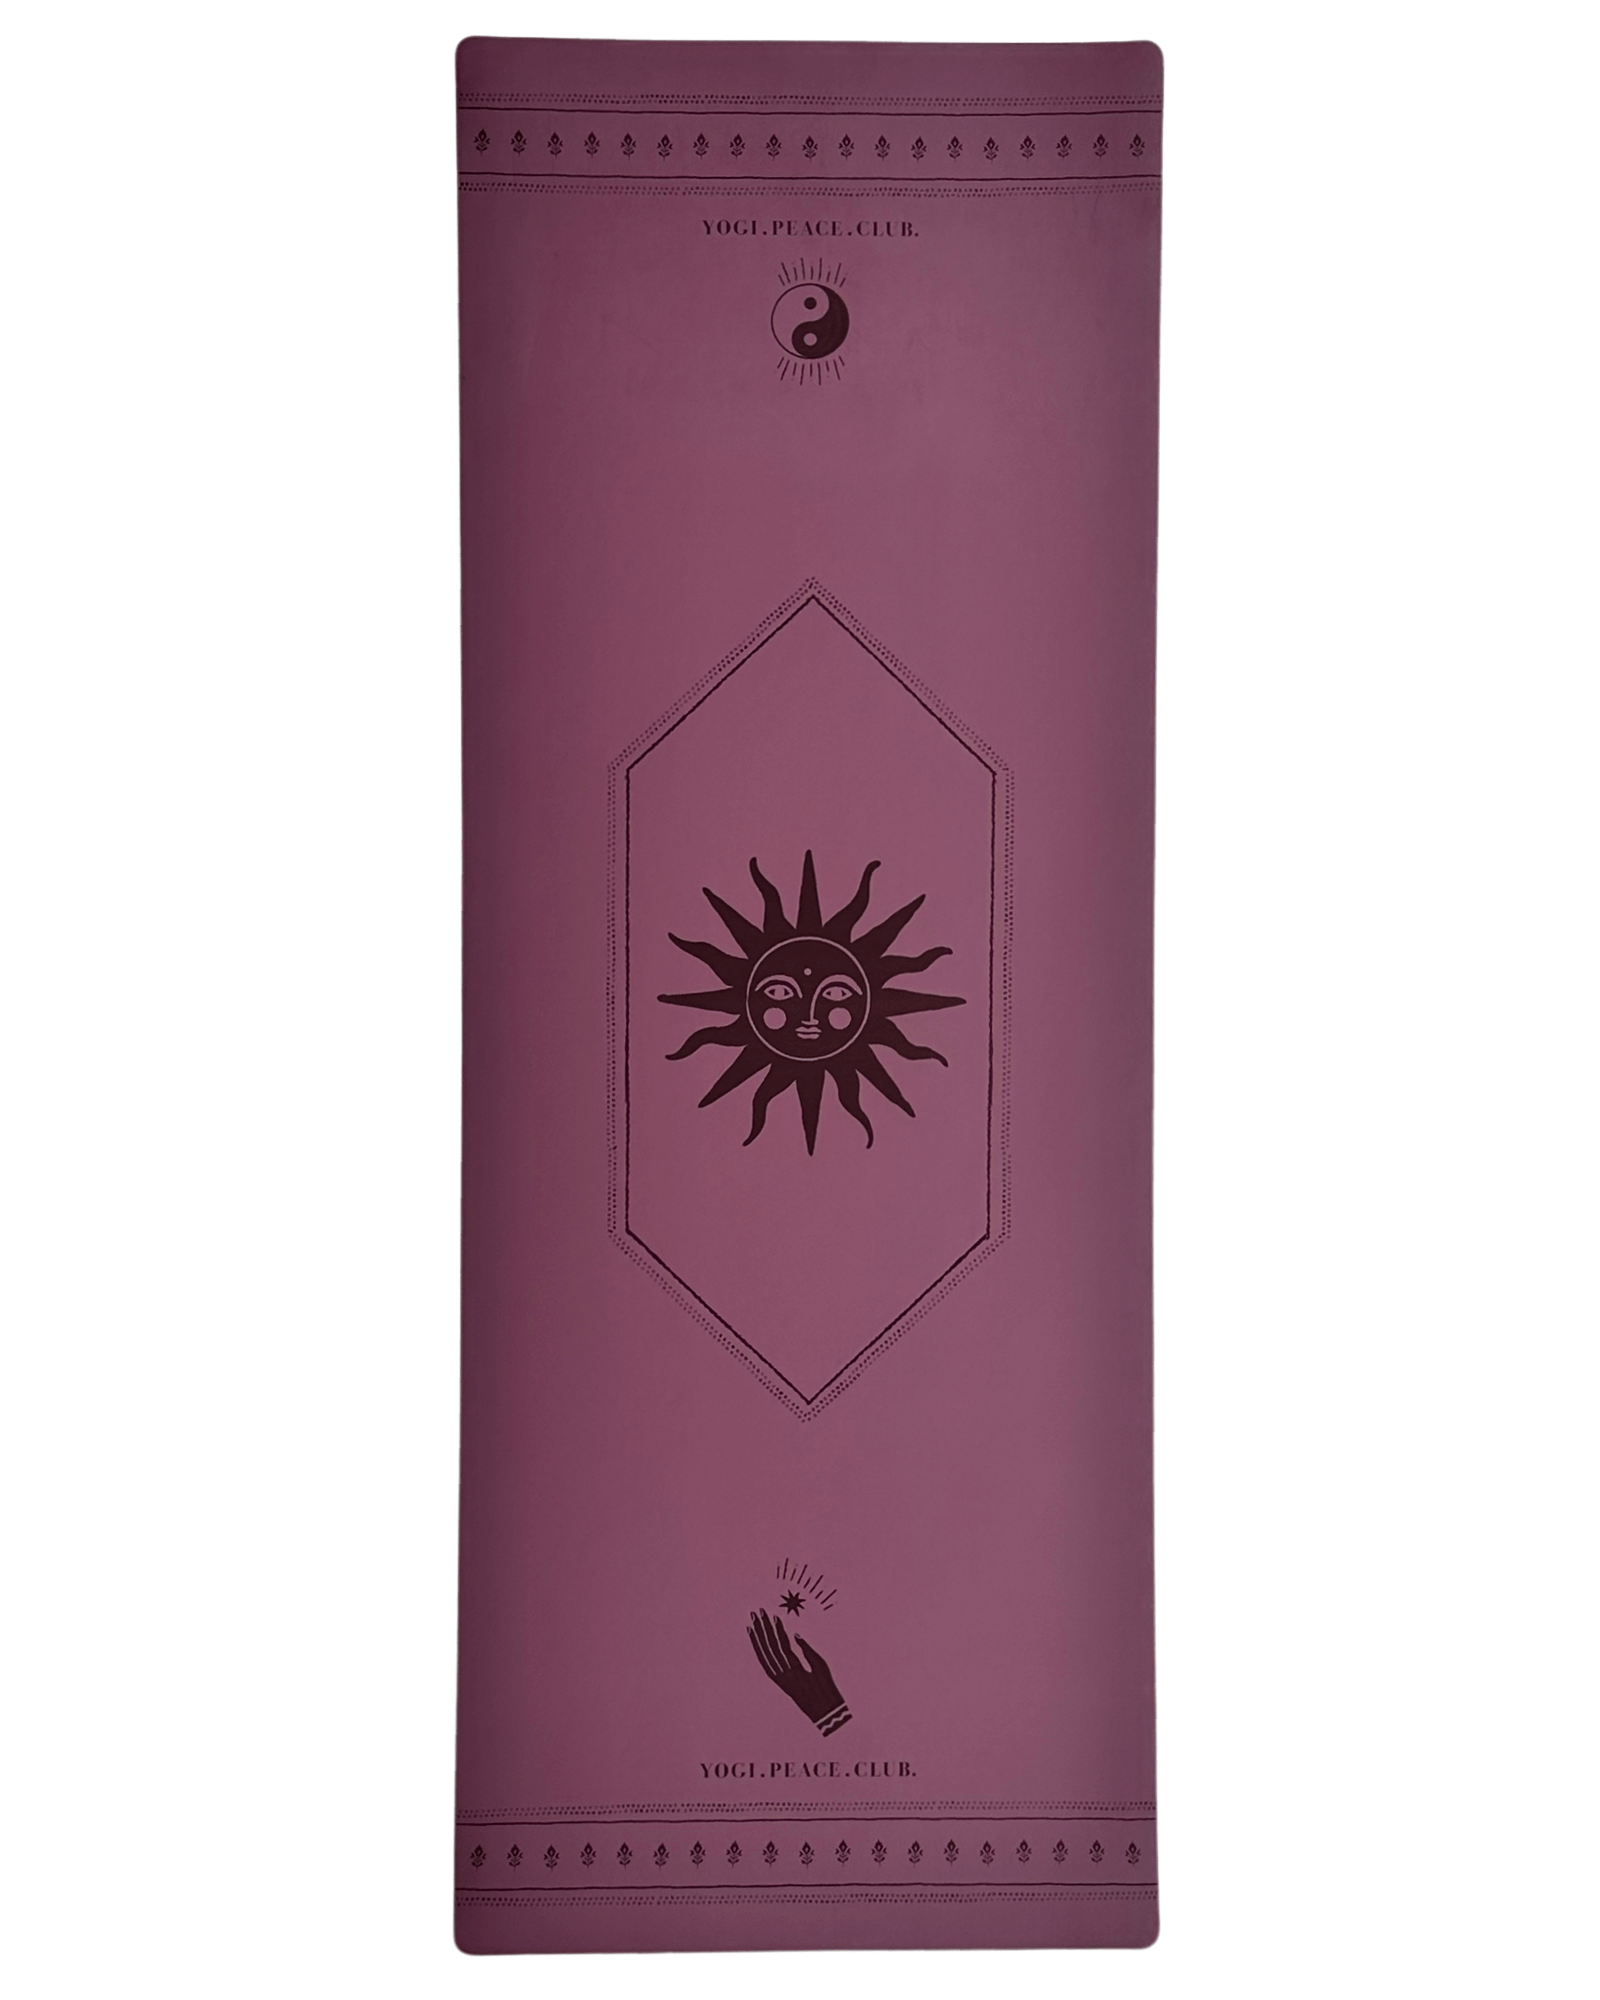 Yoga Pack - Deluxe Plum Yoga Mat + Block + Strap + Incense - Yogi Peace Club - Yoga Pack